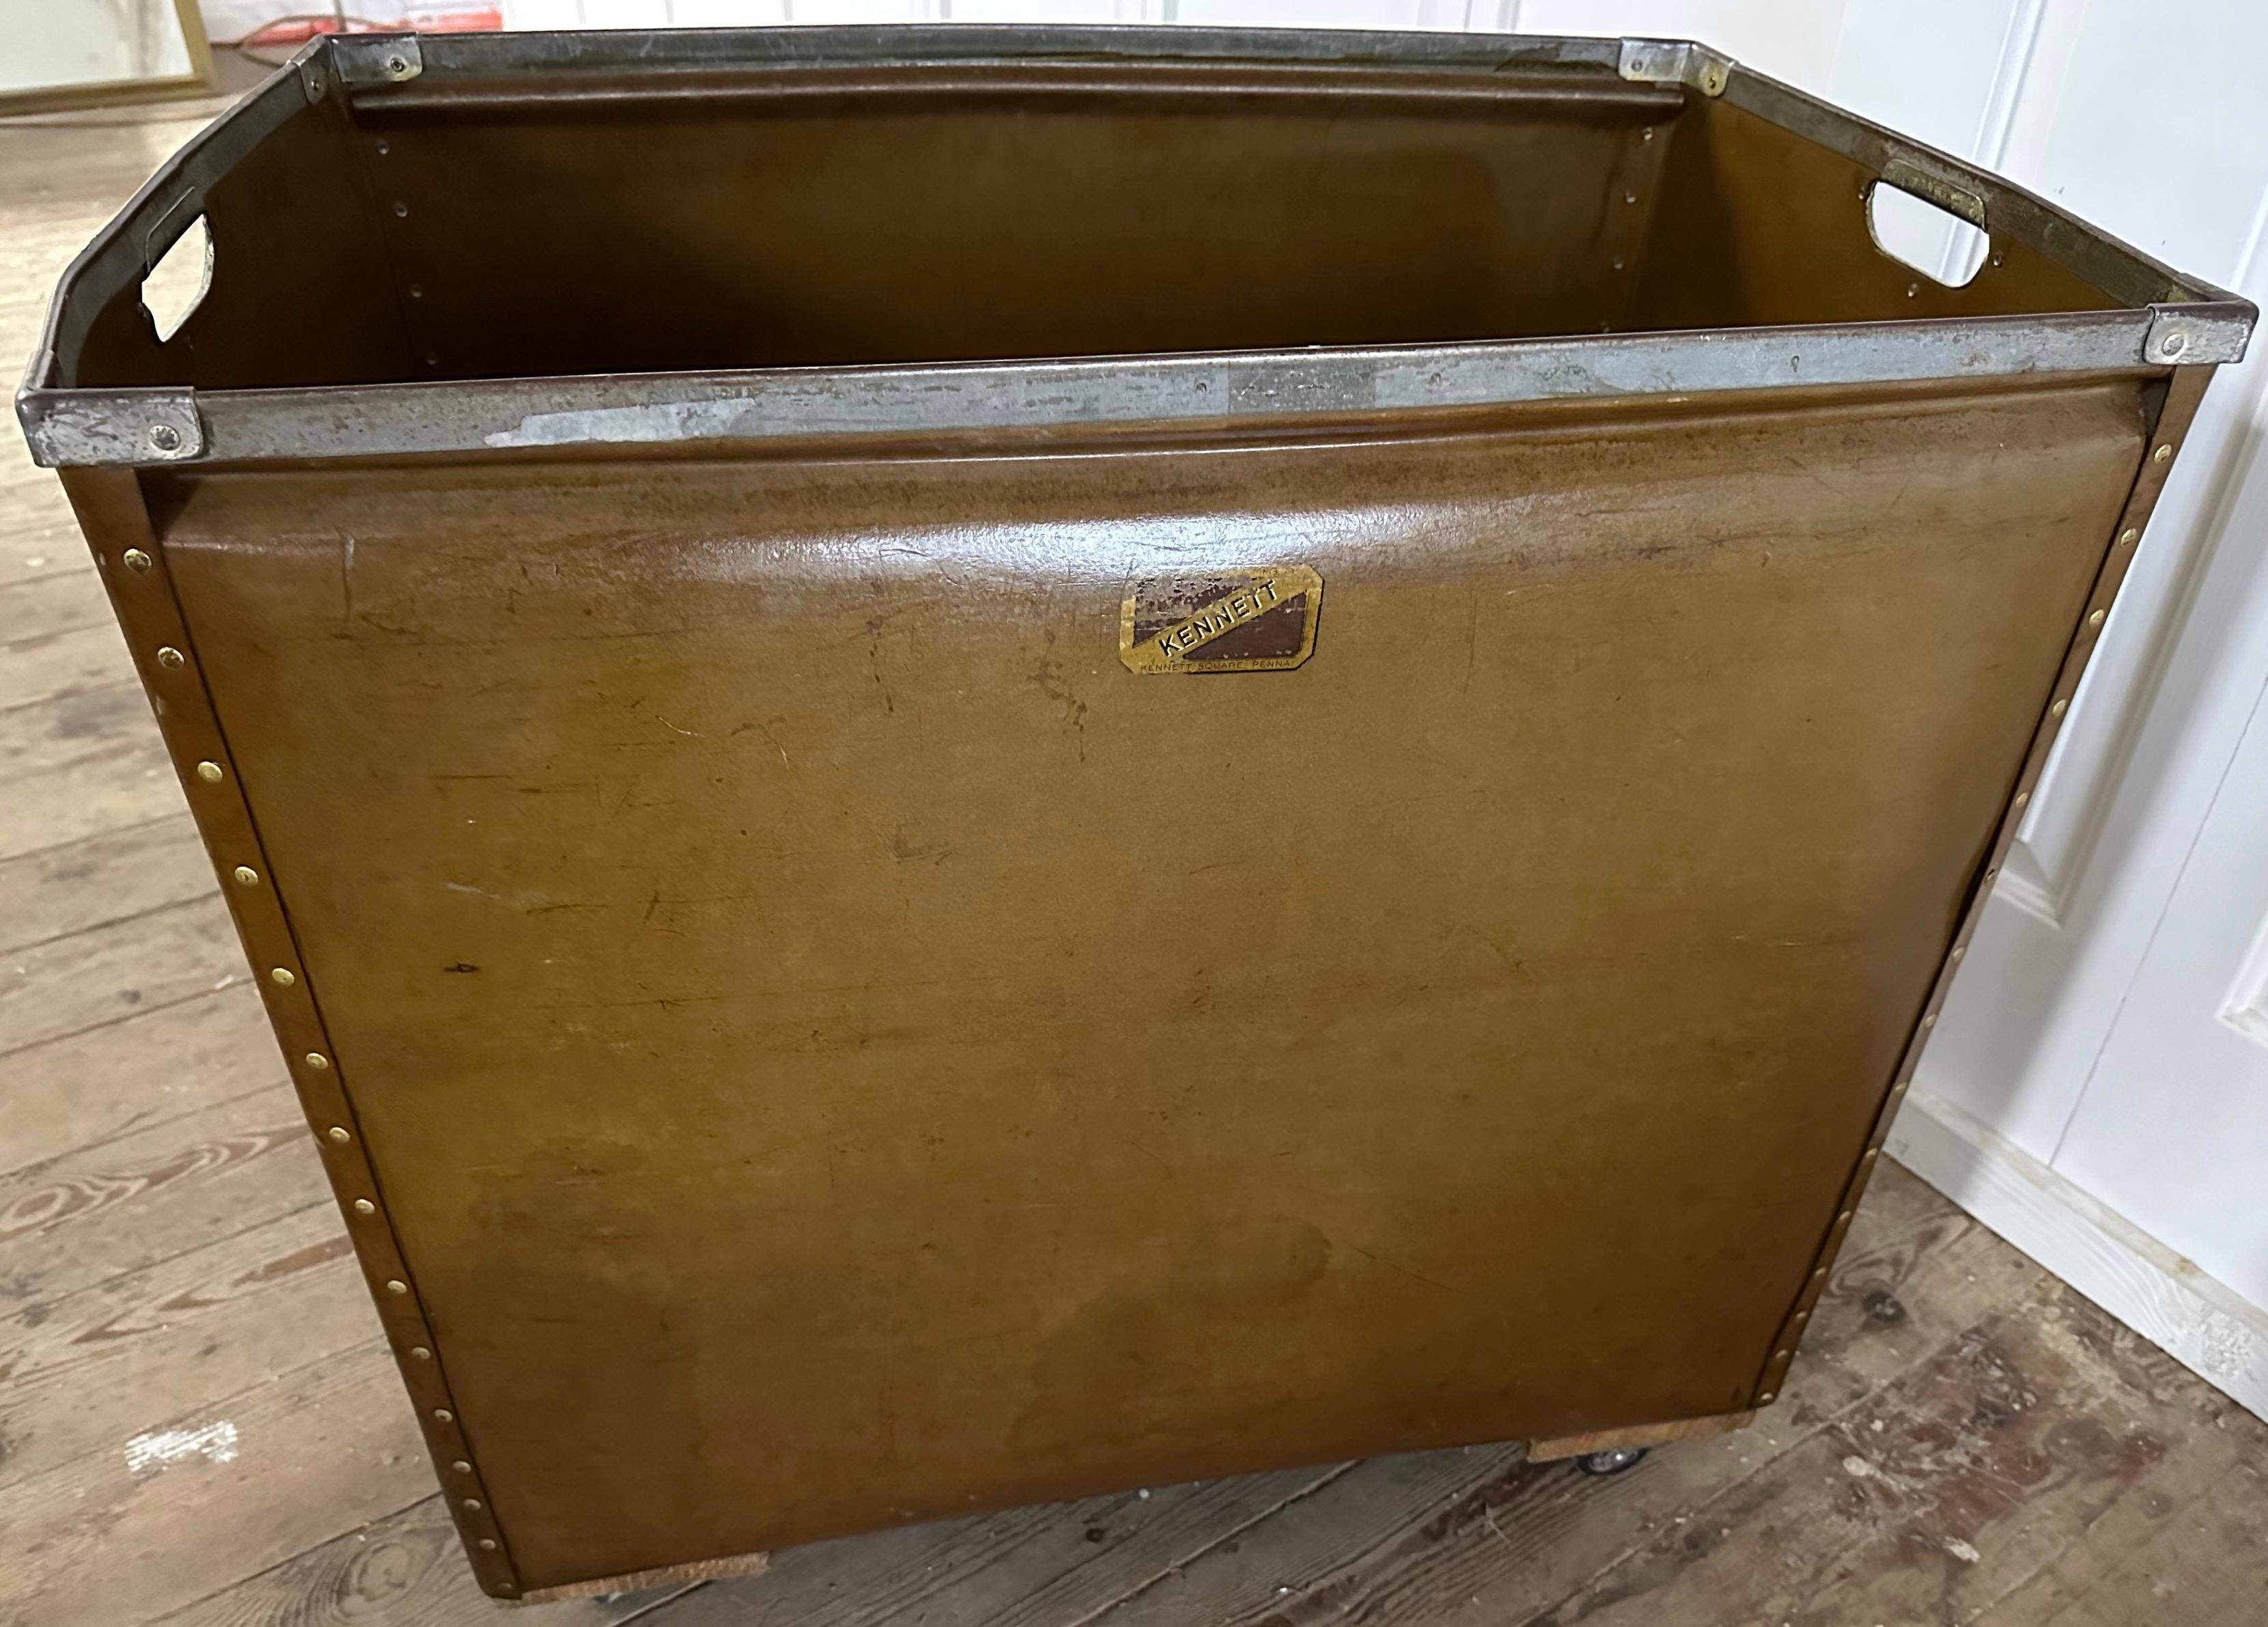 Pressed Large Vintage Mail Bin or Storage Cart For Sale